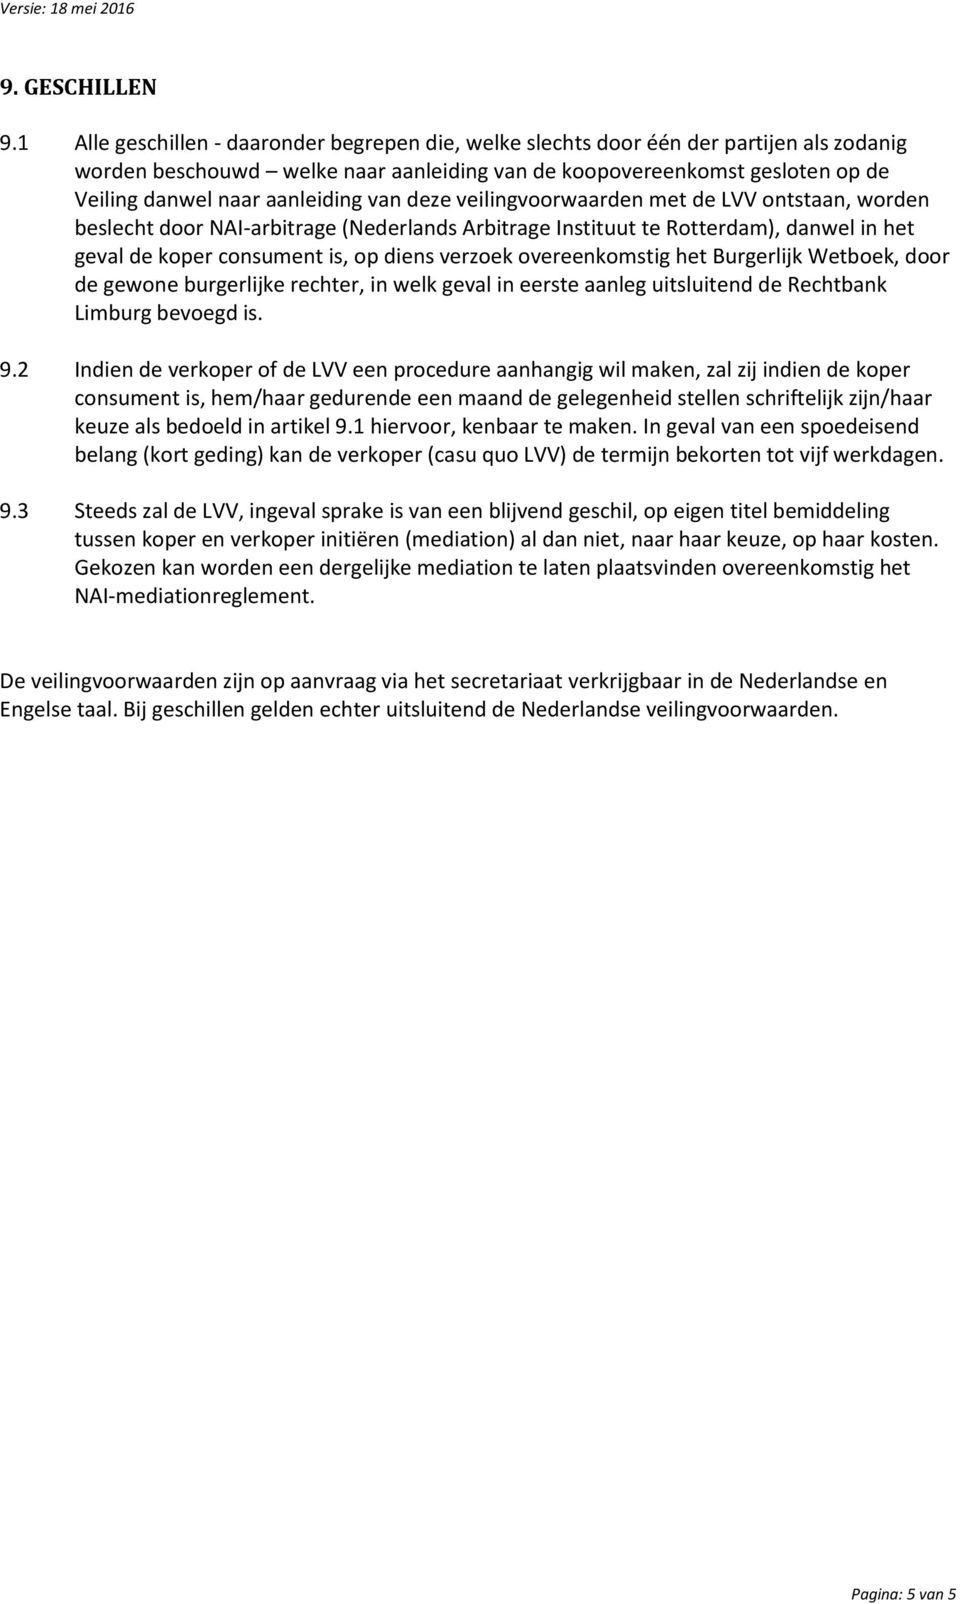 aanleiding van deze veilingvoorwaarden met de LVV ontstaan, worden beslecht door NAI-arbitrage (Nederlands Arbitrage Instituut te Rotterdam), danwel in het geval de koper consument is, op diens